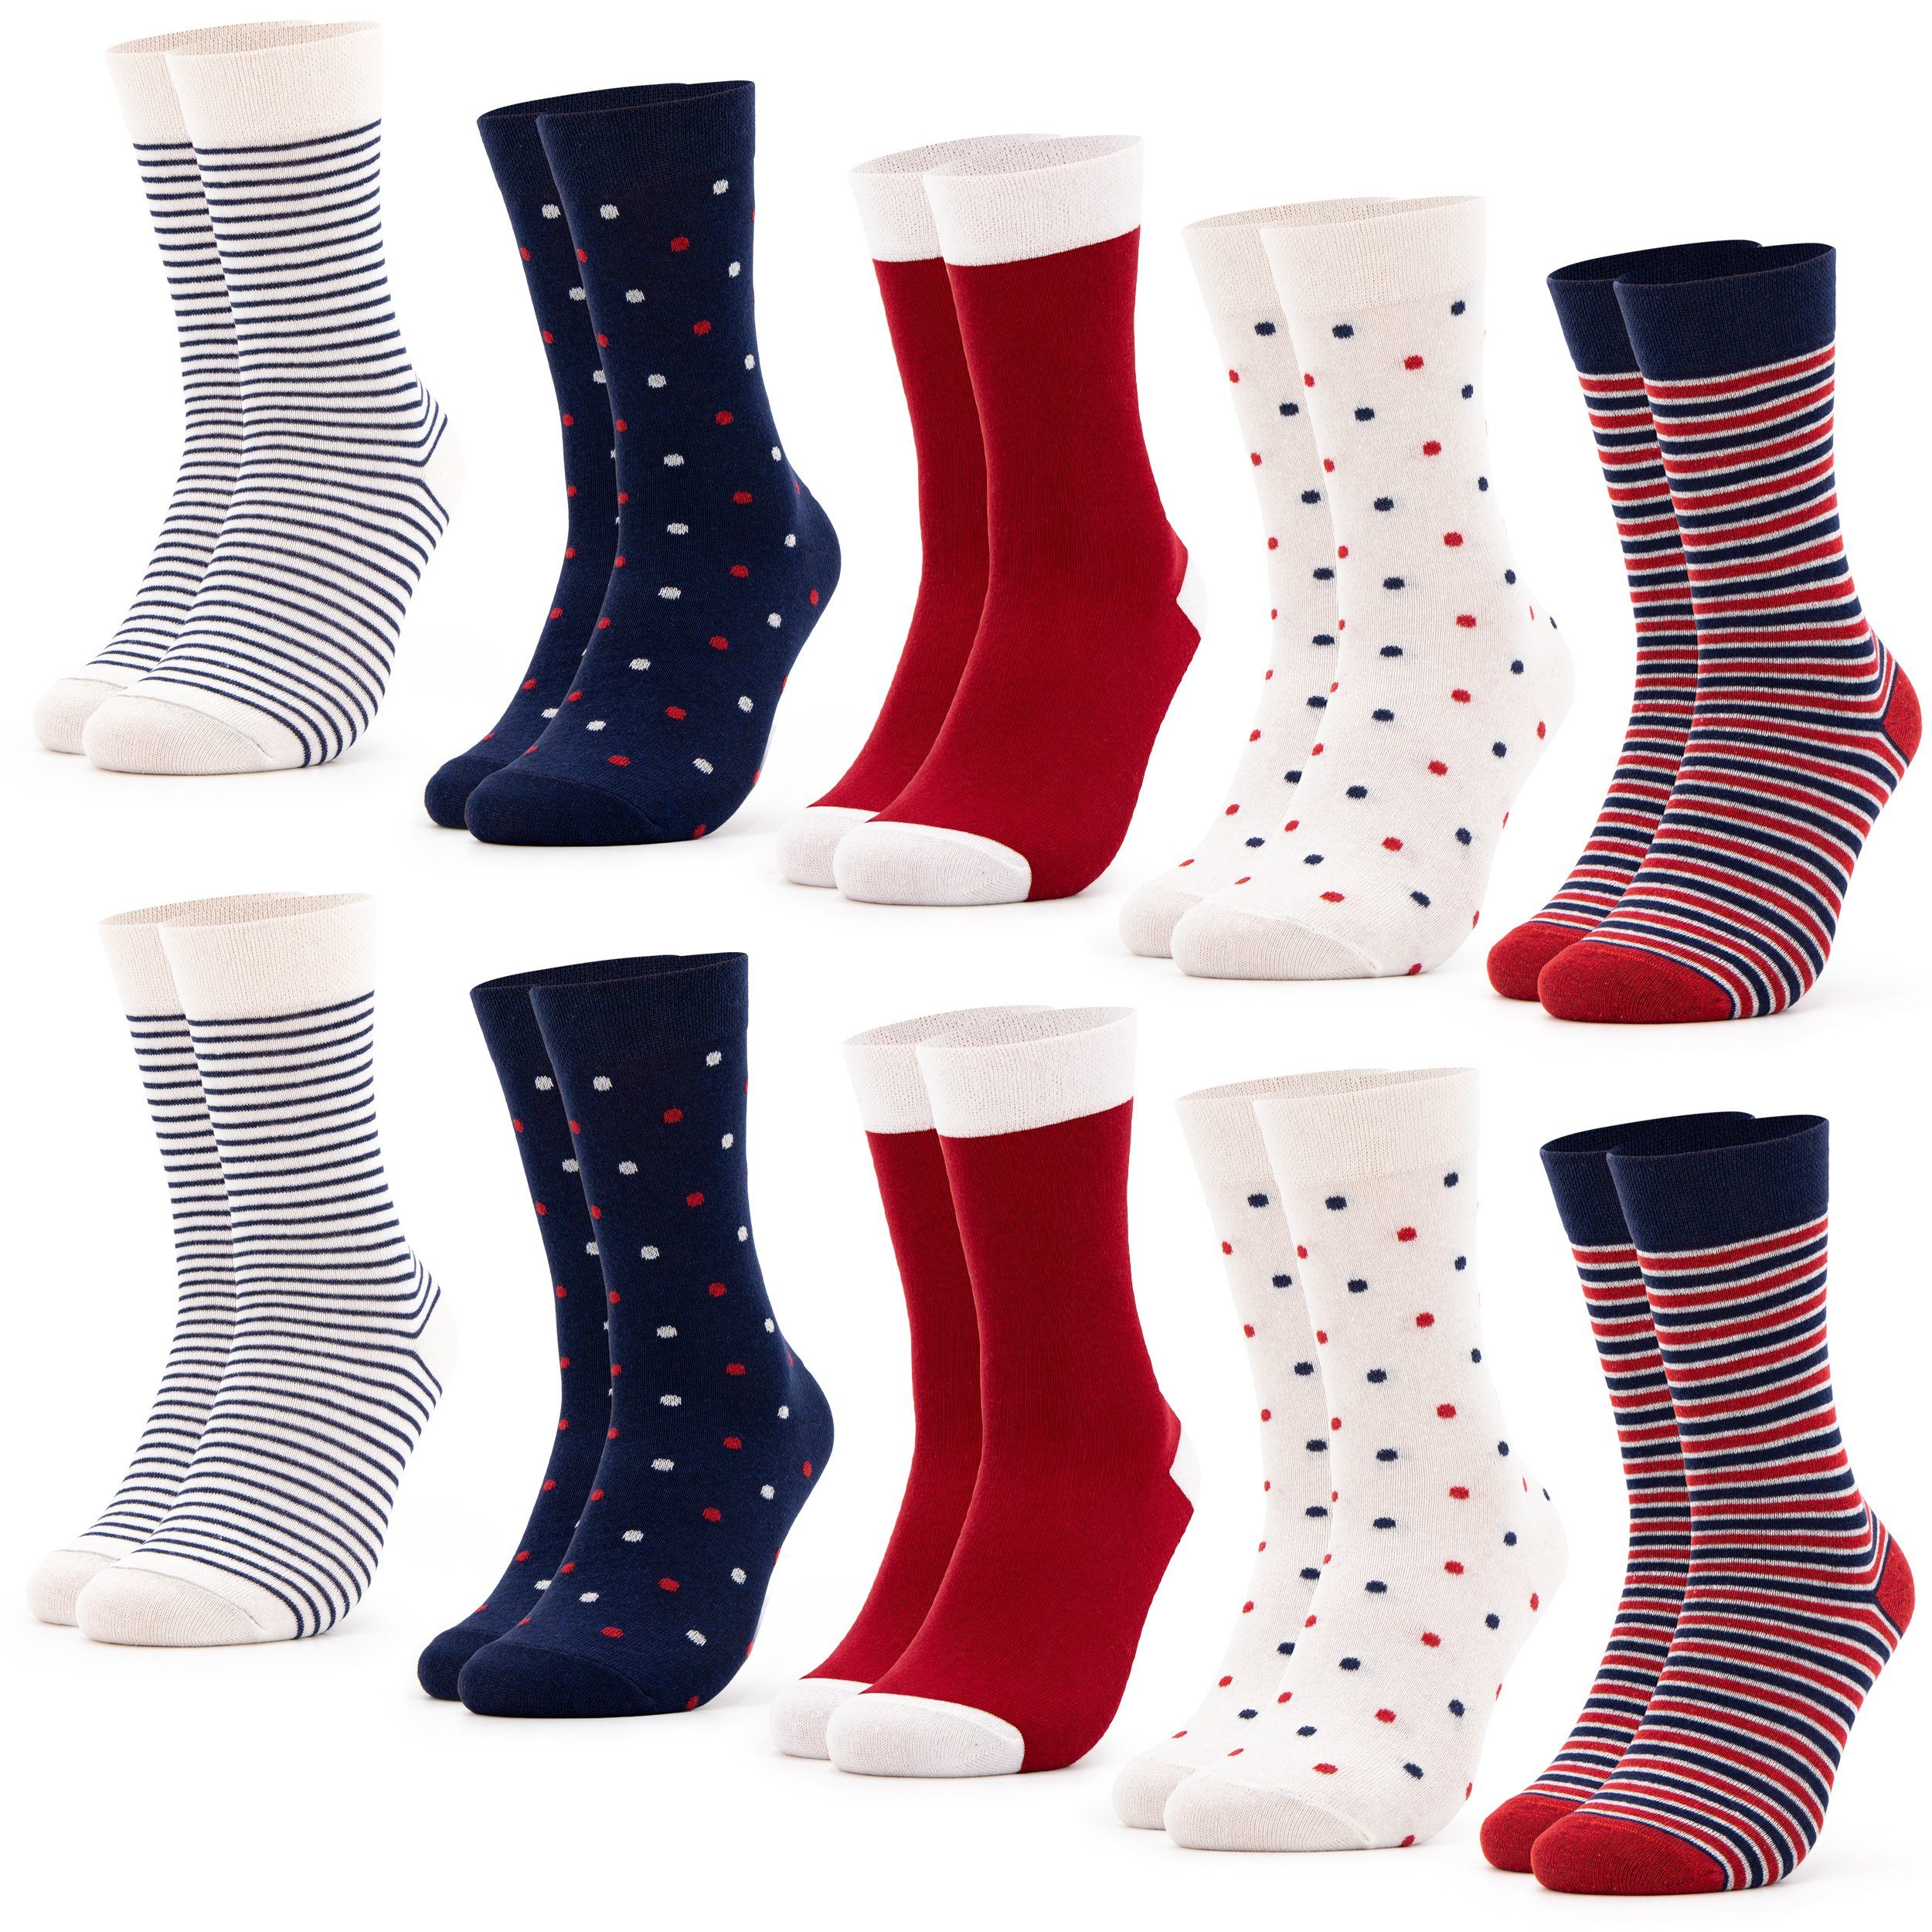 OCCULTO Basicsocken Damen Muster Socken 10 Paar (Modell: Milka) (10-Paar) 10BluRed | Lange Socken